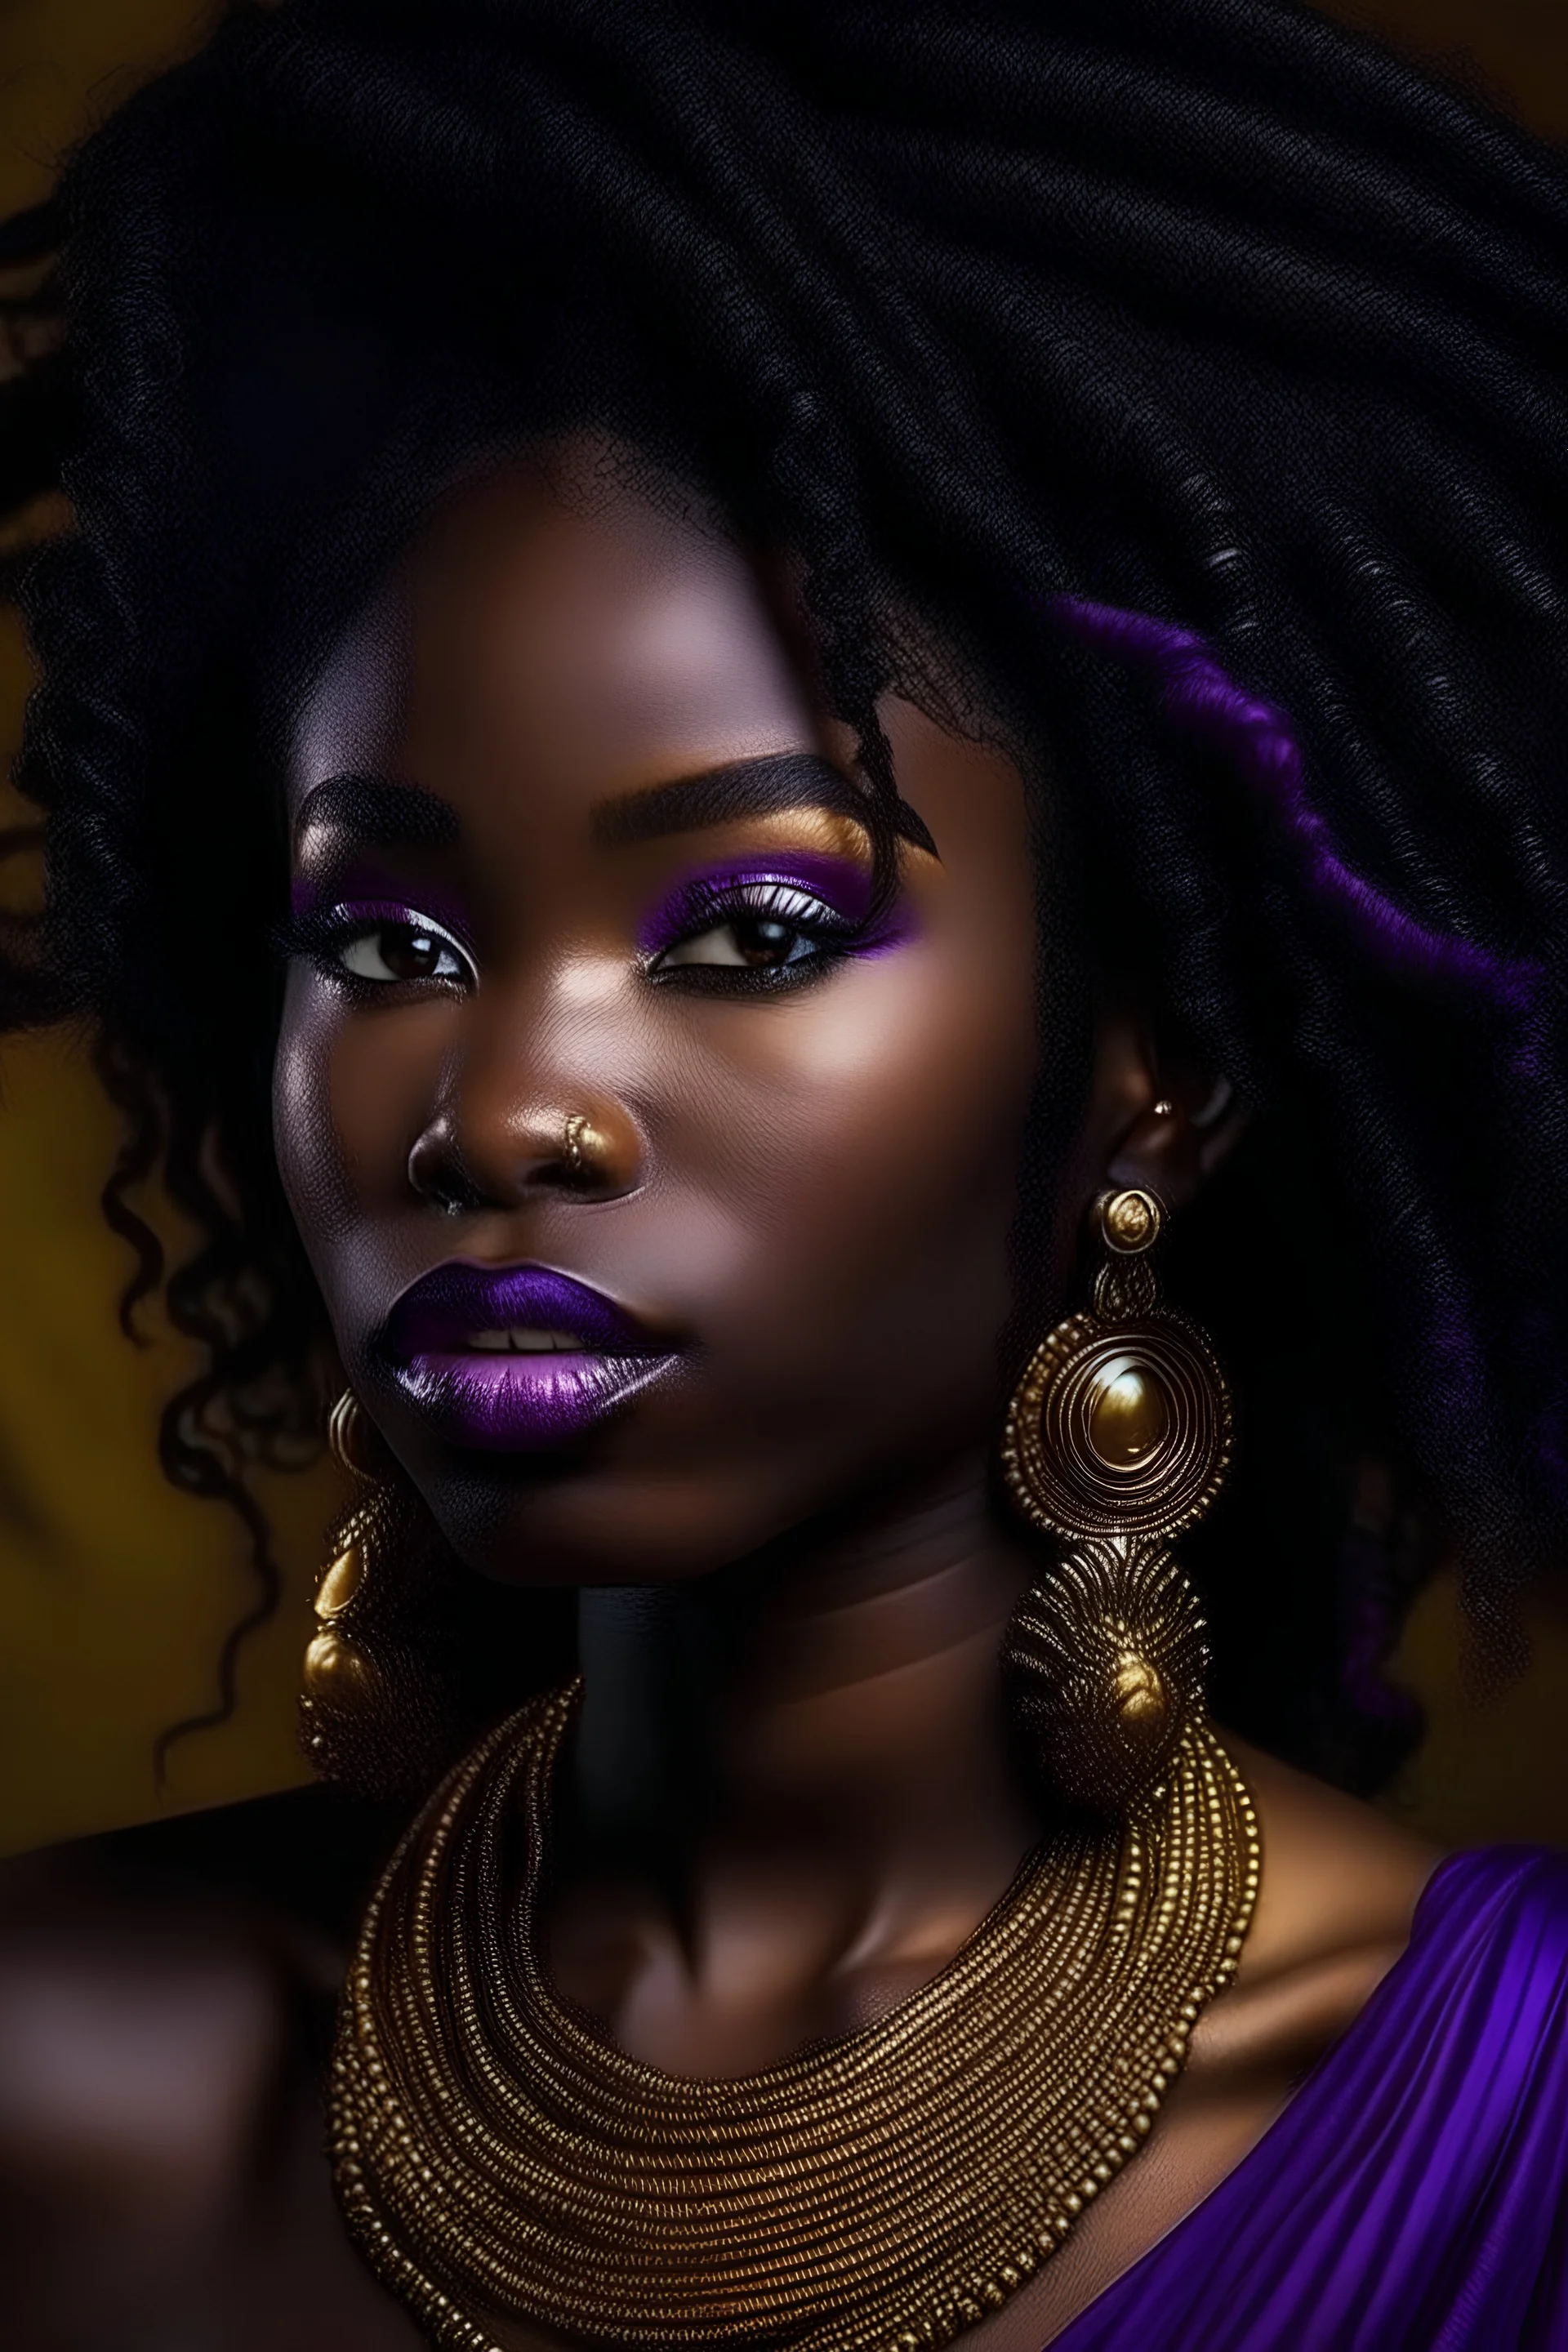 Female, dark skin, purple goddess locks, golden earrings